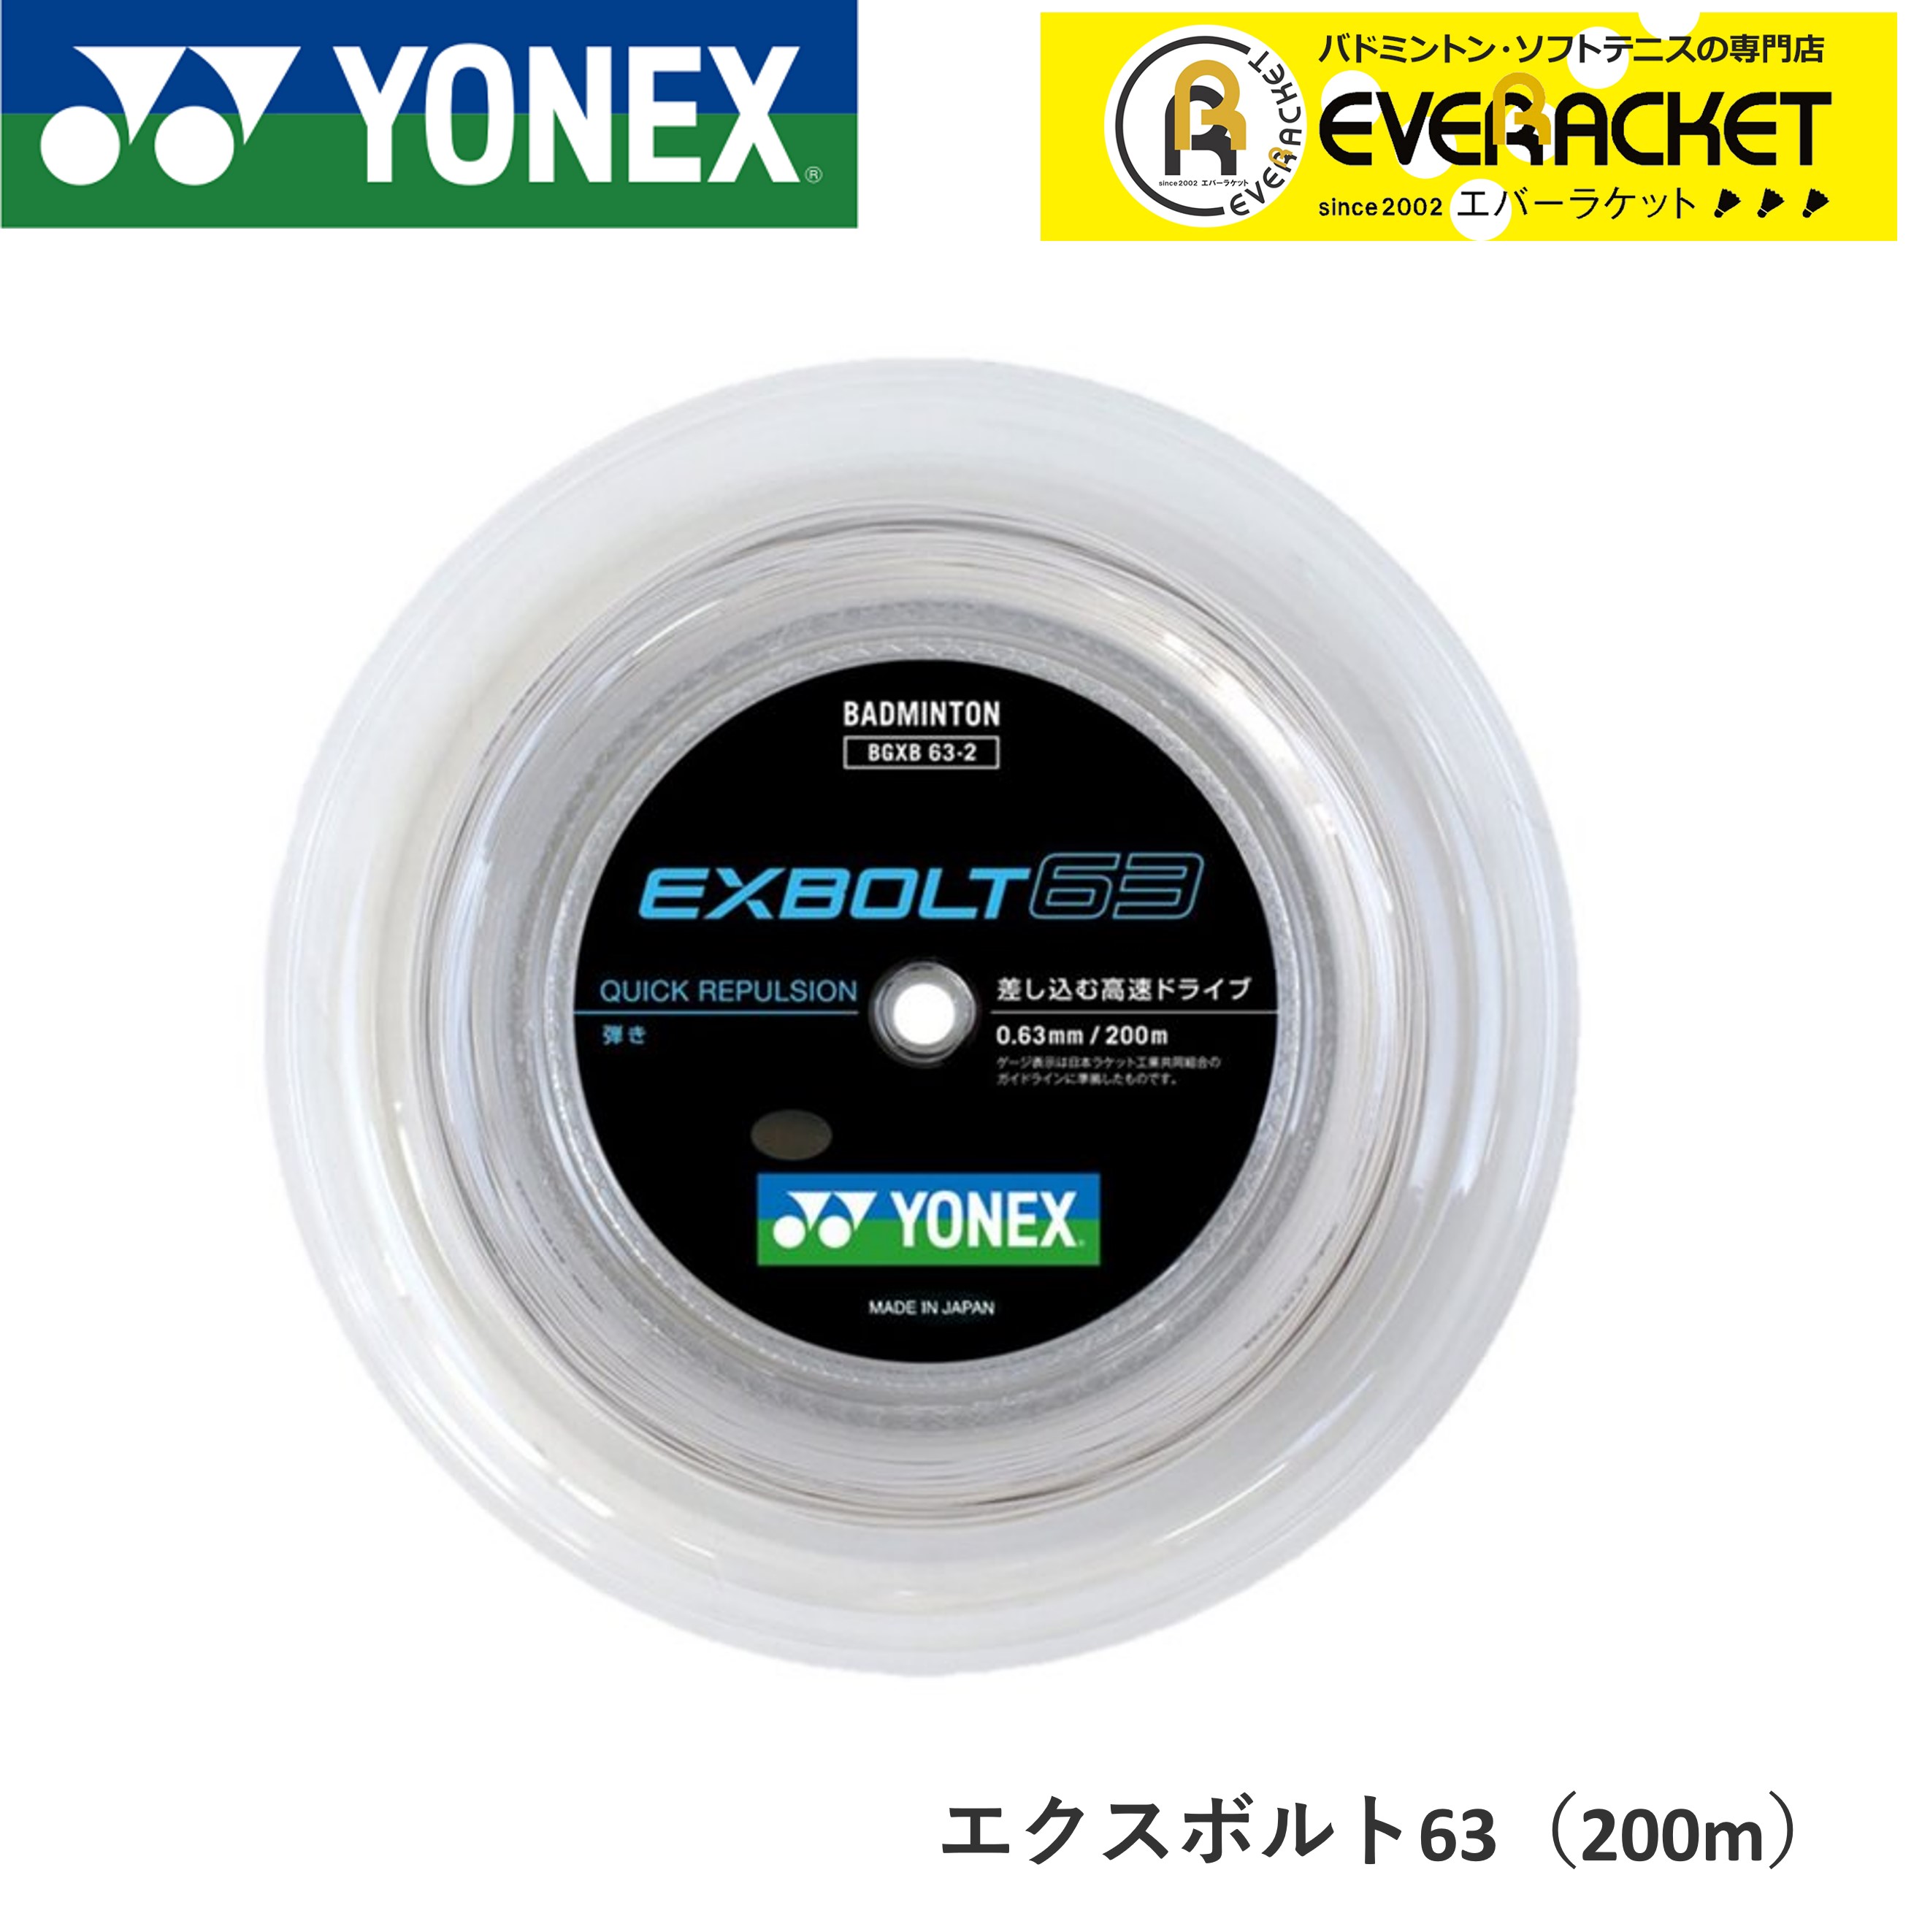 迅速な対応で商品をお届け致します ヨネックス EXBOLT 65 200mロール エクスボルト65 ホワイト